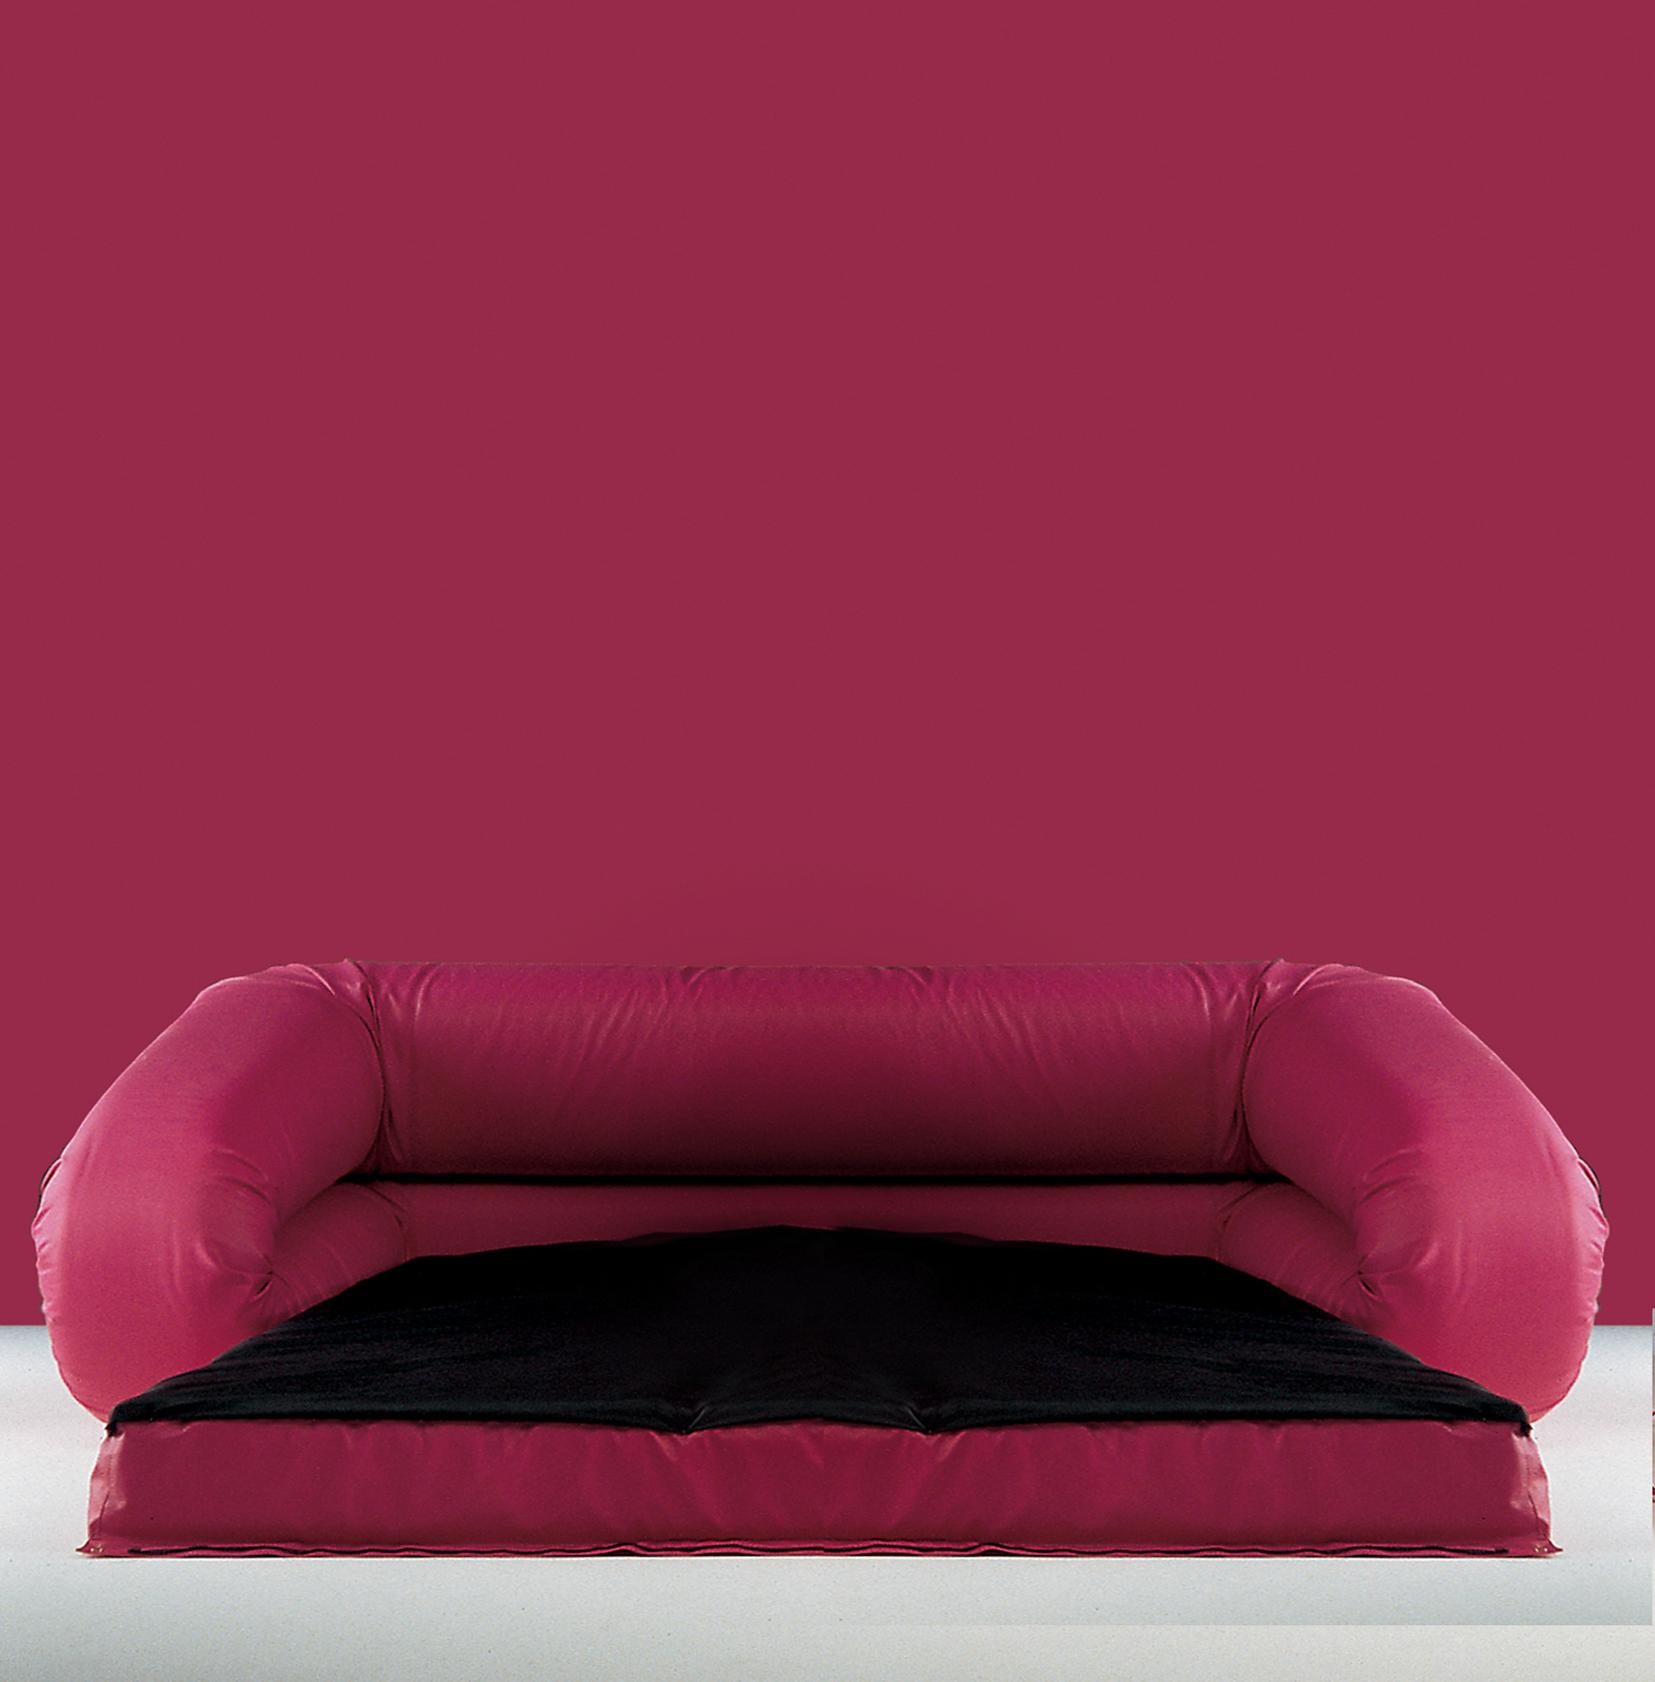 Le canapé-lit, conçu par Alessandro Becchi en collaboration avec l'équipe Giovannetti, a récemment fêté ses 50 ans.
Son histoire est riche d'événements et de participations importants. Une pièce considérée comme un 